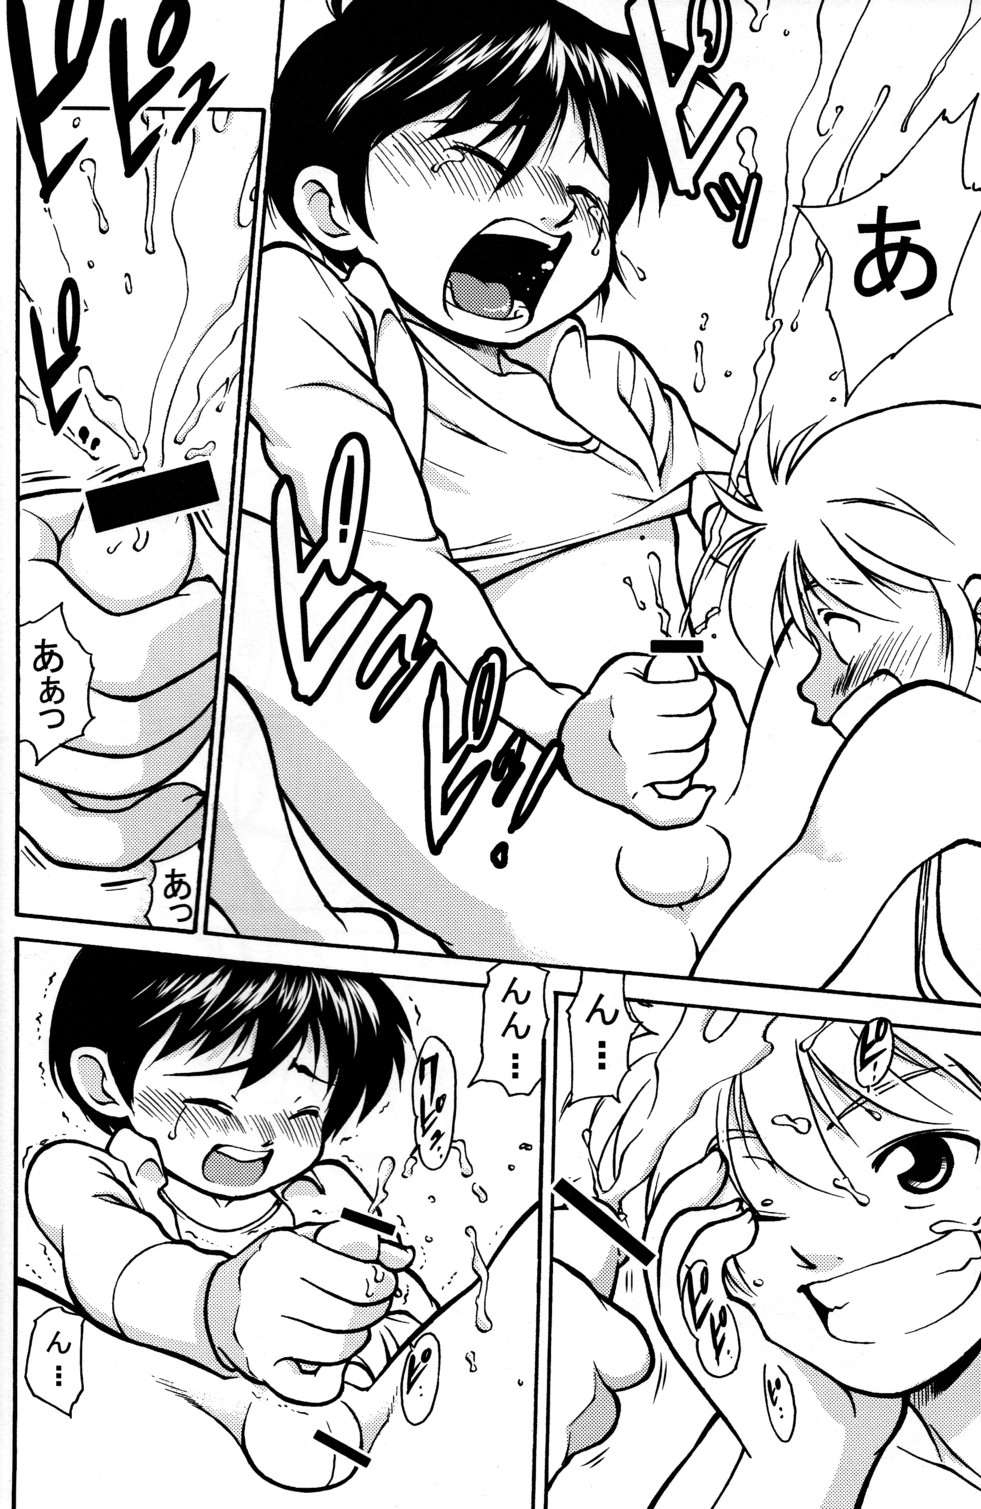 [Yuuji] Boys Life 1 page 6 full